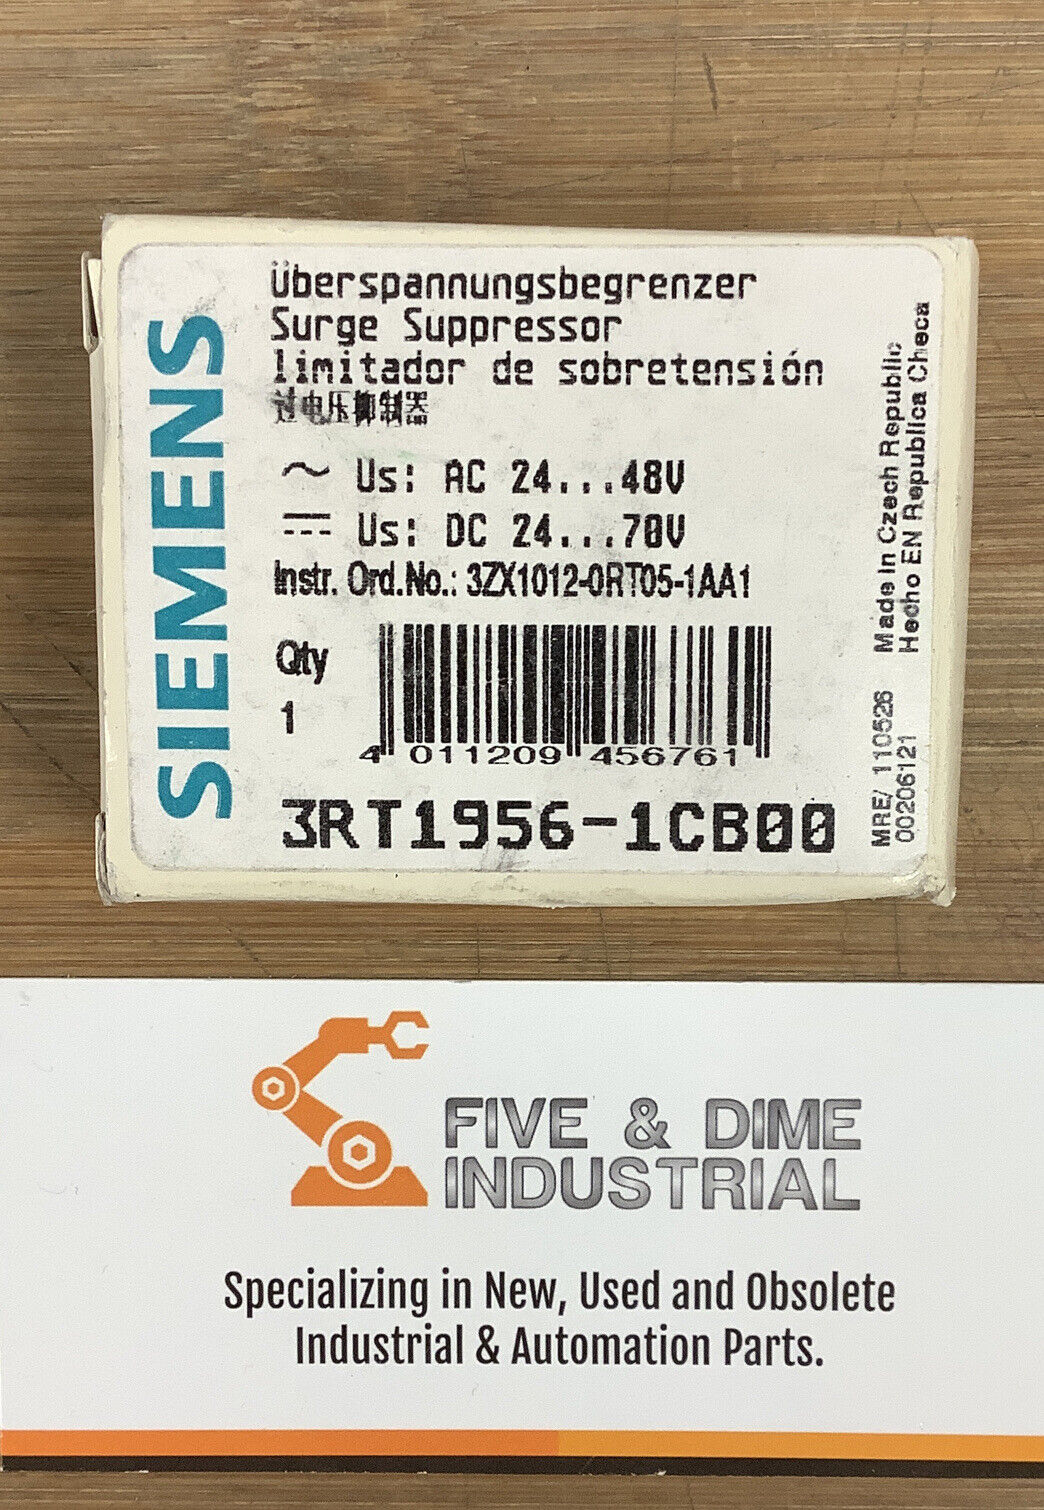 Siemens 3RT1956-1CB00 SURGE SUPPRESSOR (YE137)